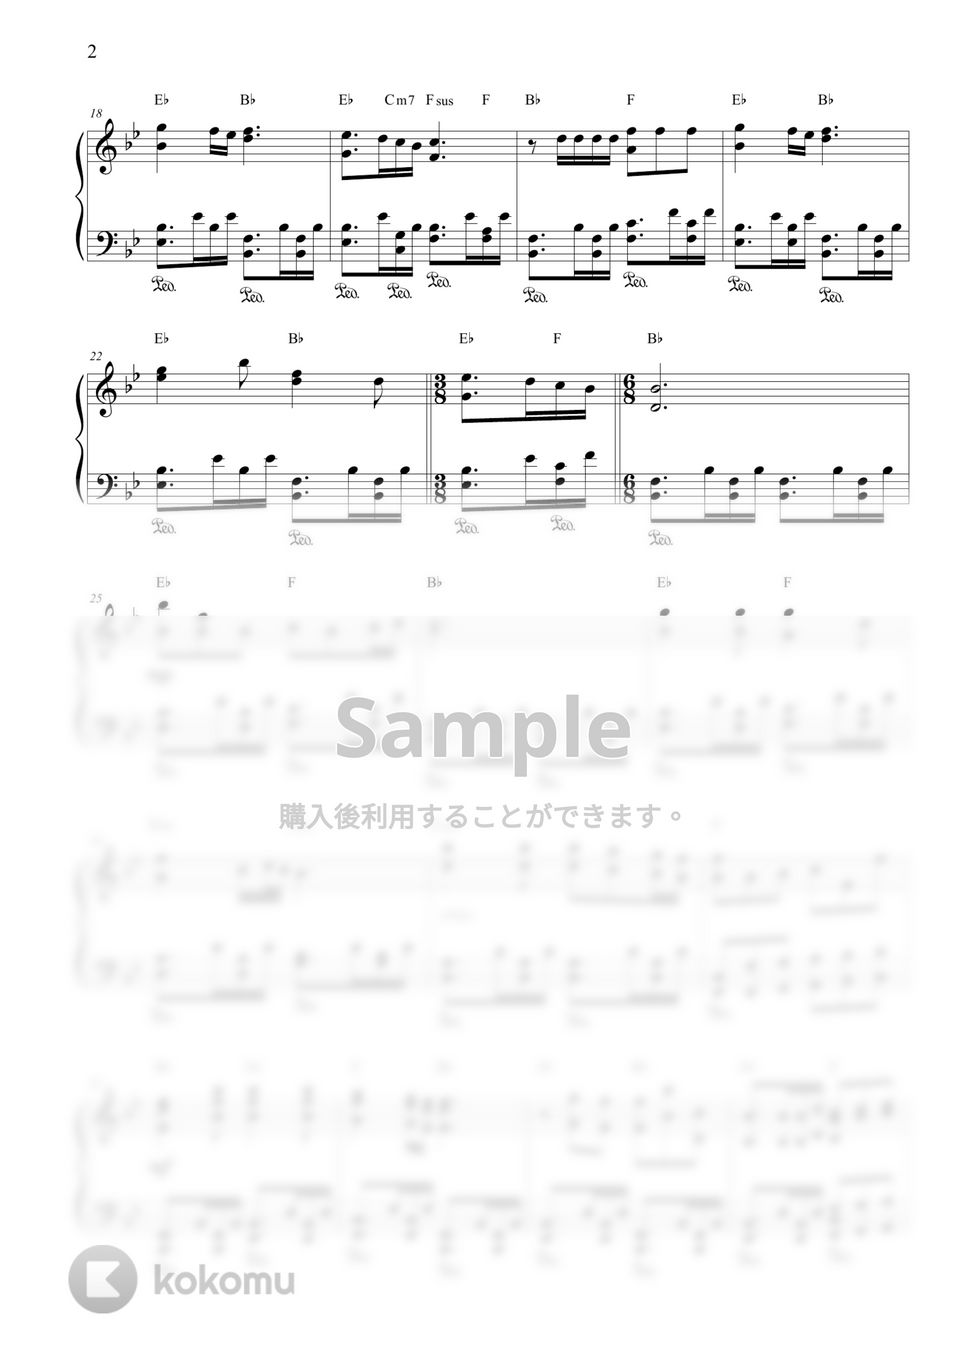 あいみょん - 愛の花 (『らんまん』主題歌) by CANACANA family